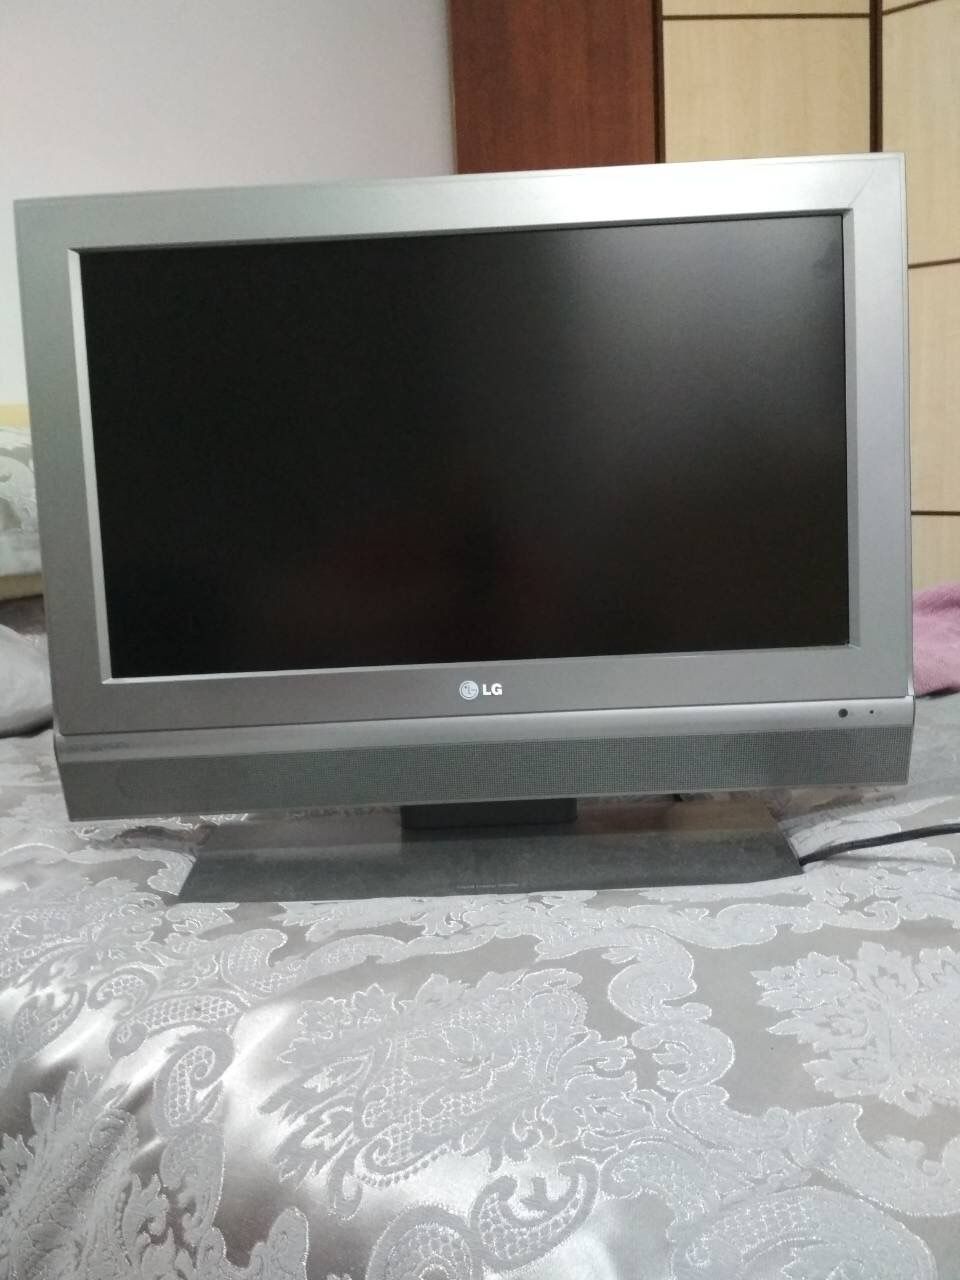 Купить б у lg. Телевизор монитор LG model17d10. LG 54 дюйма. Телевизор LG model (473/1128. LG cs207 g.